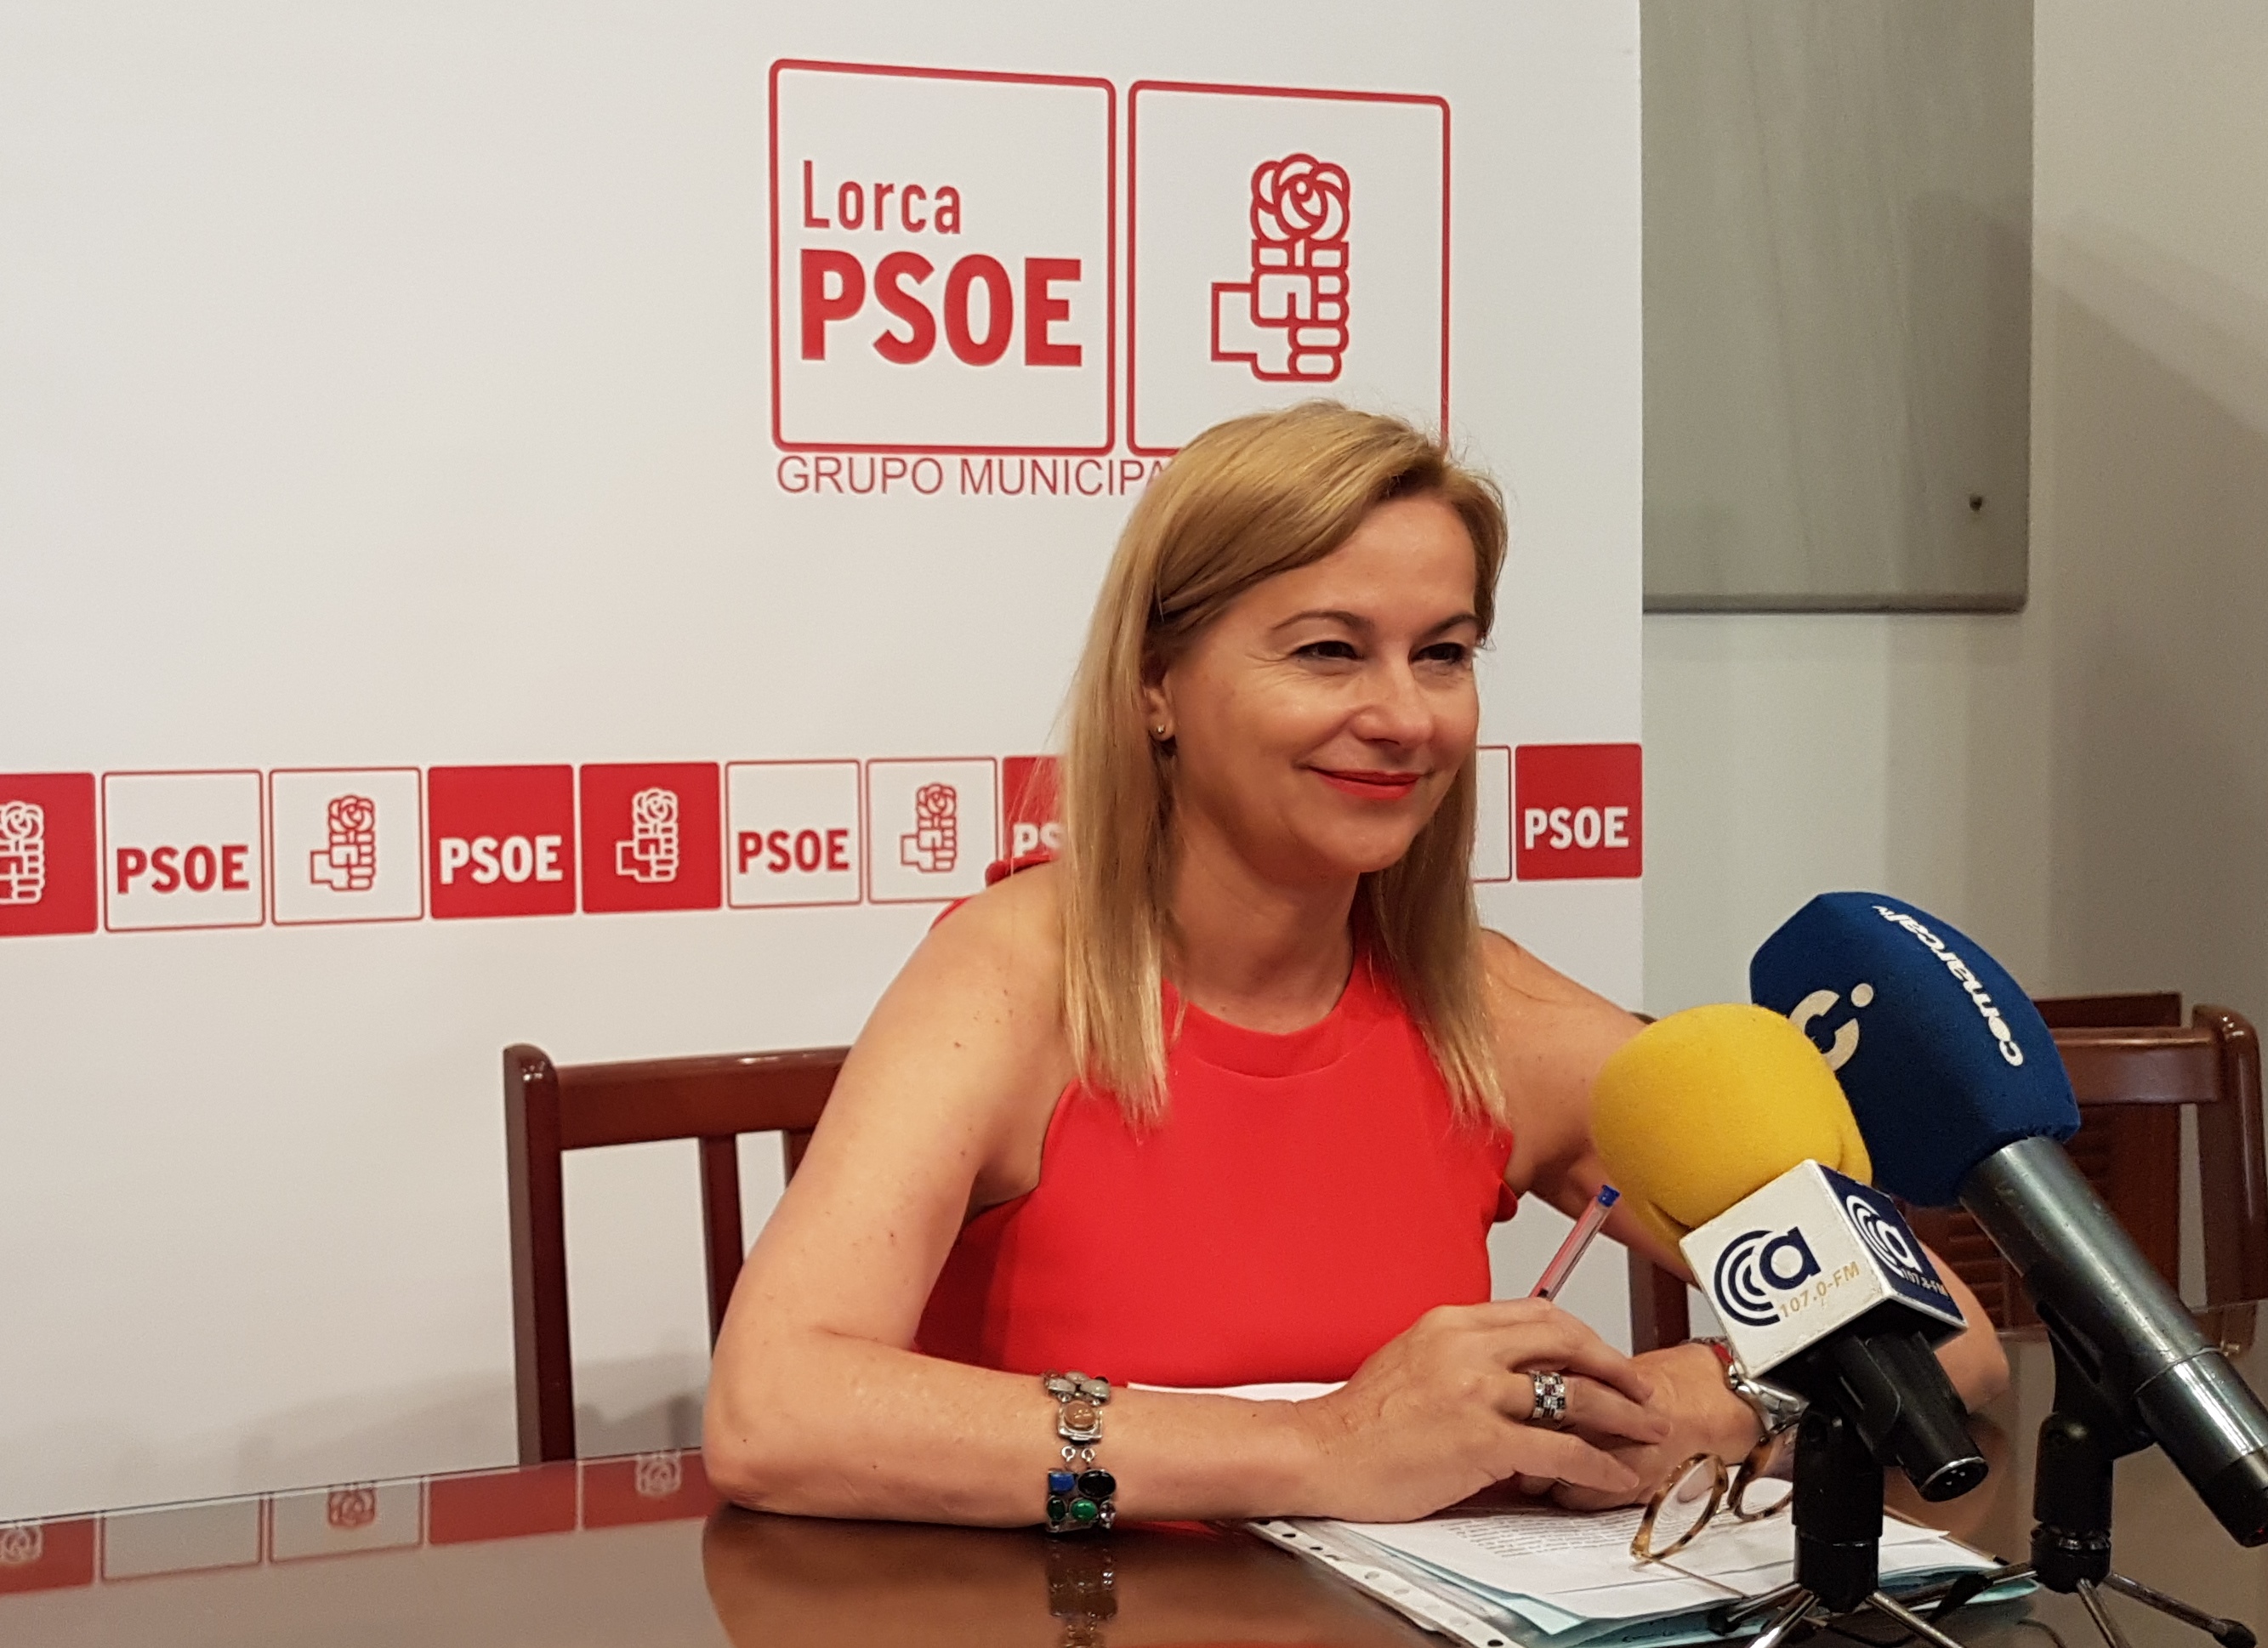 El PSOE celebra que Lorca se incorpore a la Red de Juderías de España: “Se hace justicia con nuestra ciudad, ya que era inaudito que Lorca estuviera fuera”